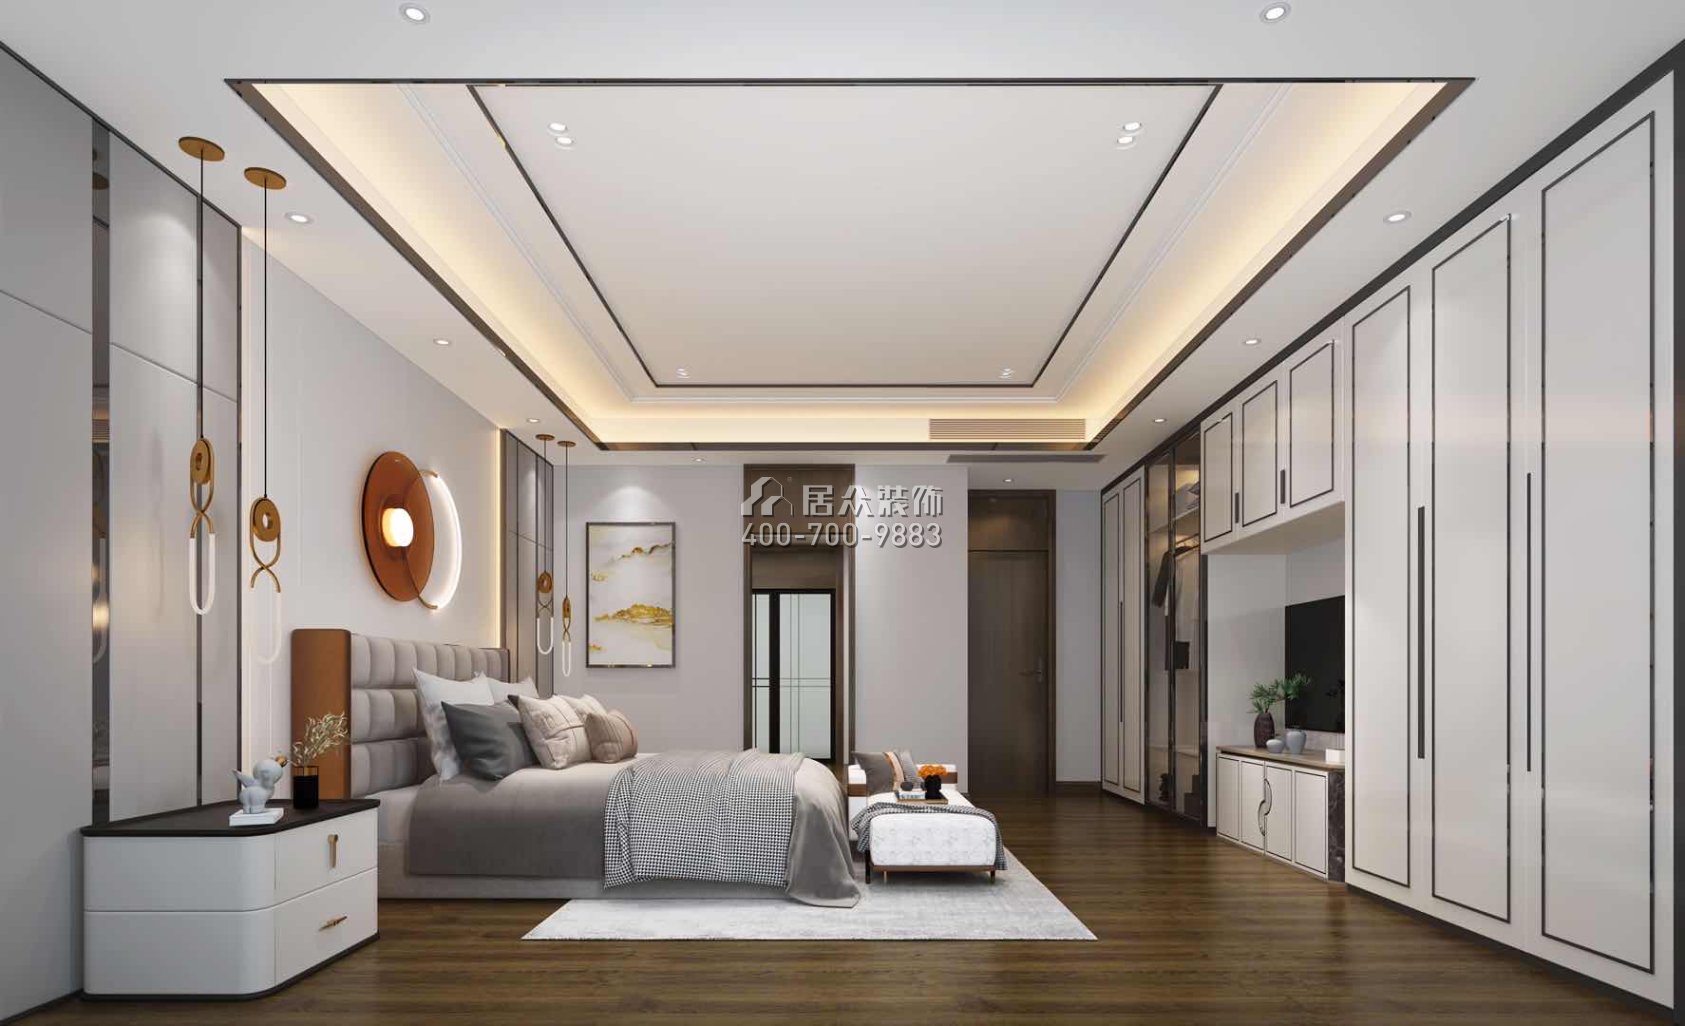 新世纪领居450平方米中式风格别墅户型卧室装修效果图